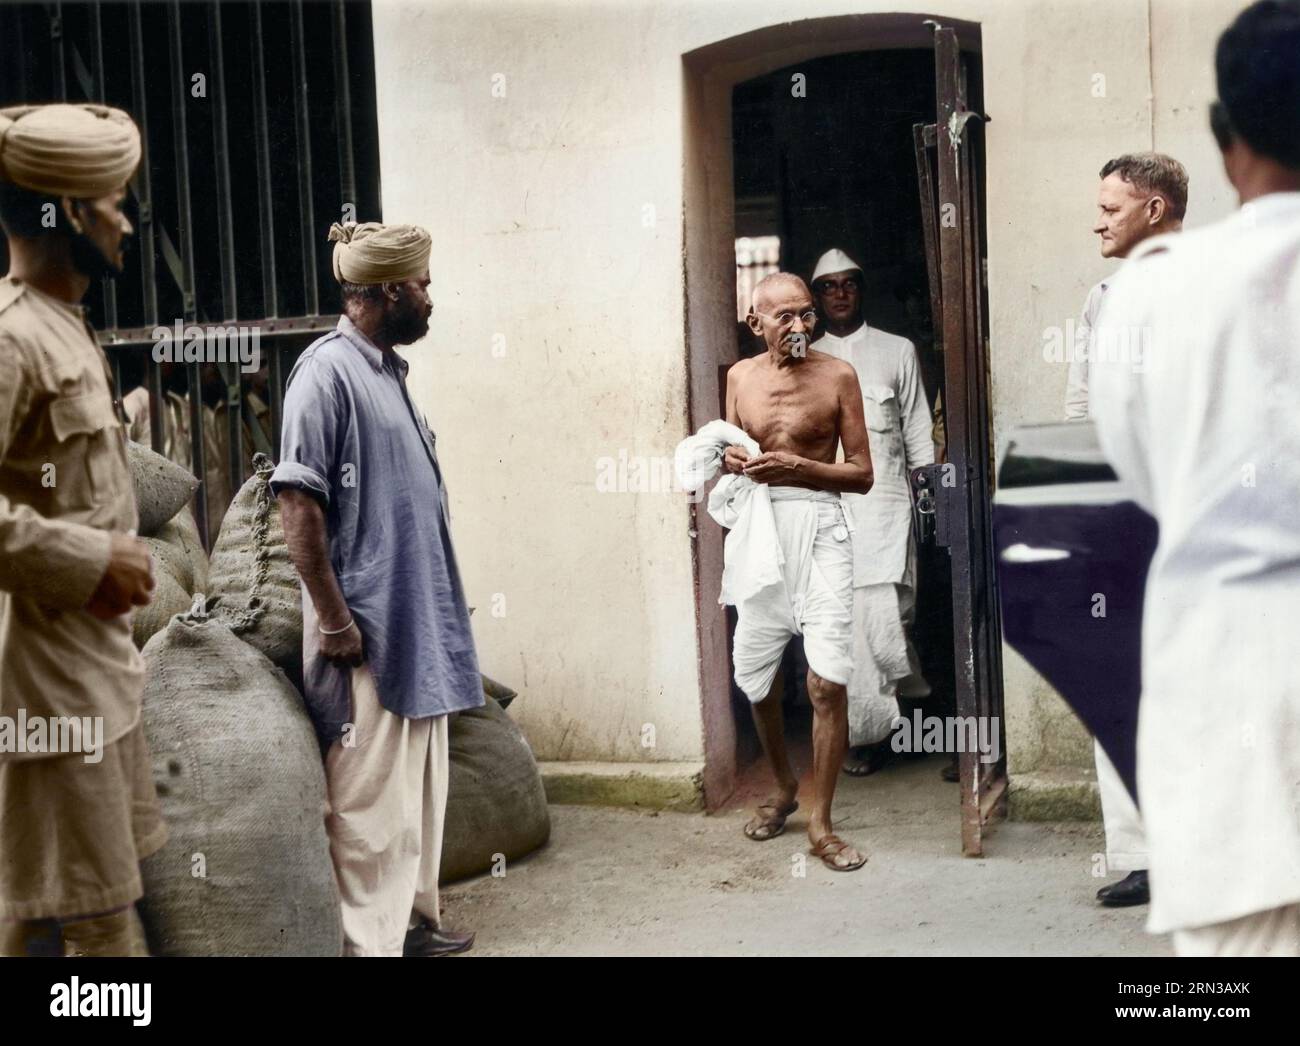 Mahatma Gandhi verlässt das Präsidentengefängnis in Kalkutta. Mahatma Gandhi verlässt das Präsidentengefängnis in Kalkutta, nachdem er politische Gefangene befragt hat. Gandh Stockfoto